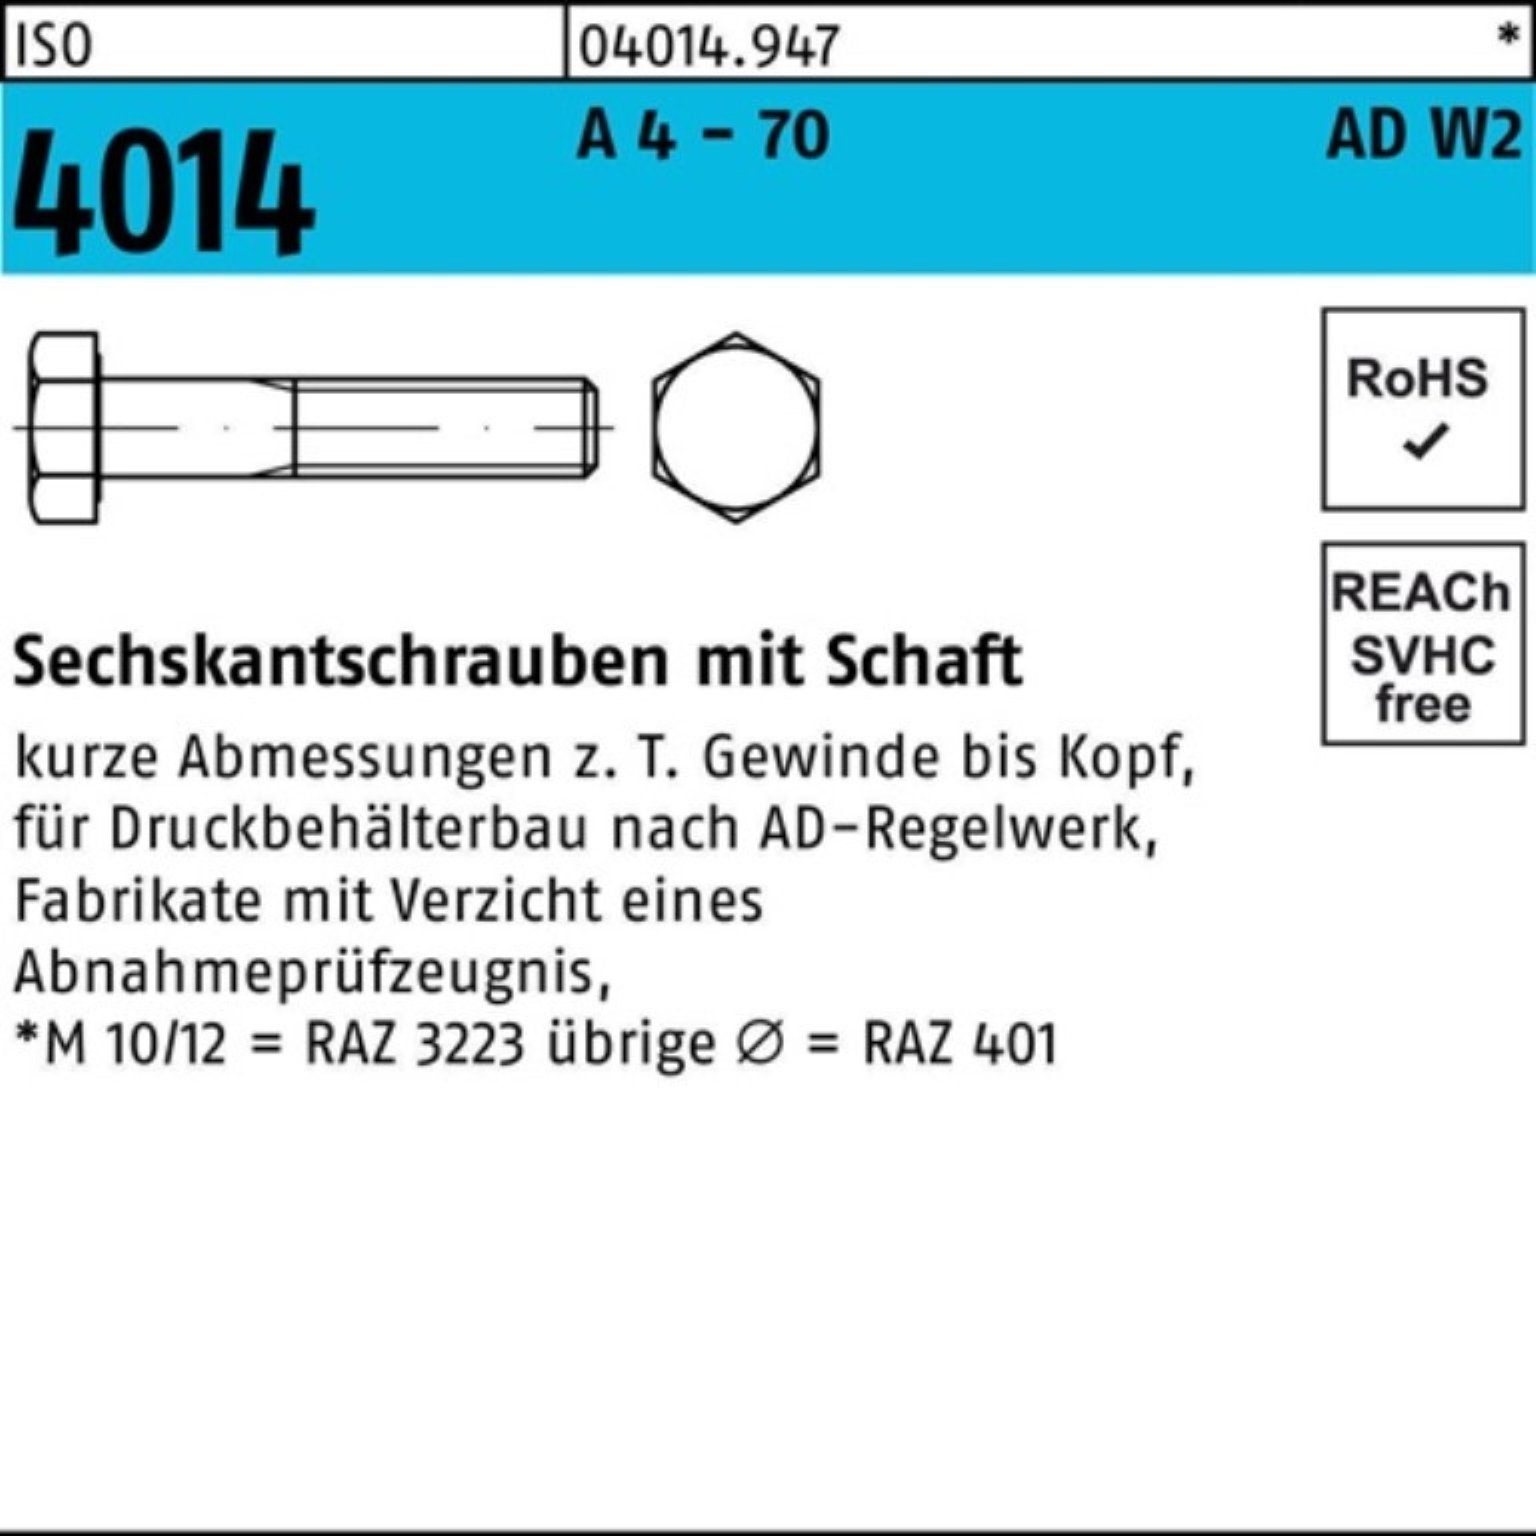 Bufab Sechskantschraube 100er Pack Sechskantschraube ISO 4014 Schaft M12x 85 A 4 - 70 AD-W2 50